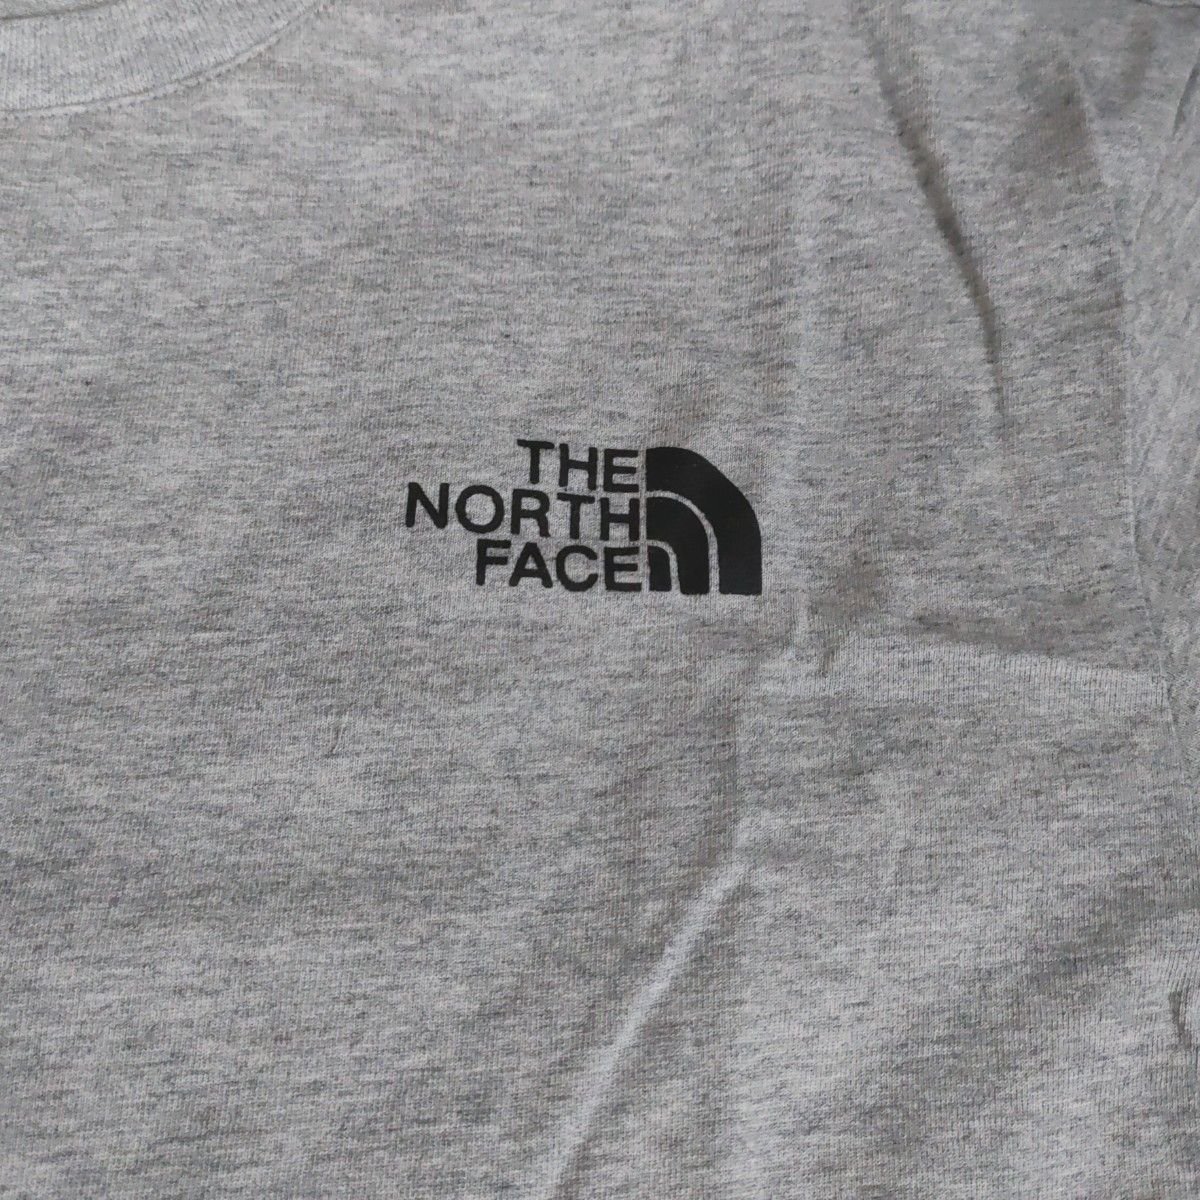 THE NORTH FACEノースフェイスシンプルロゴ半袖TシャツグレーXL